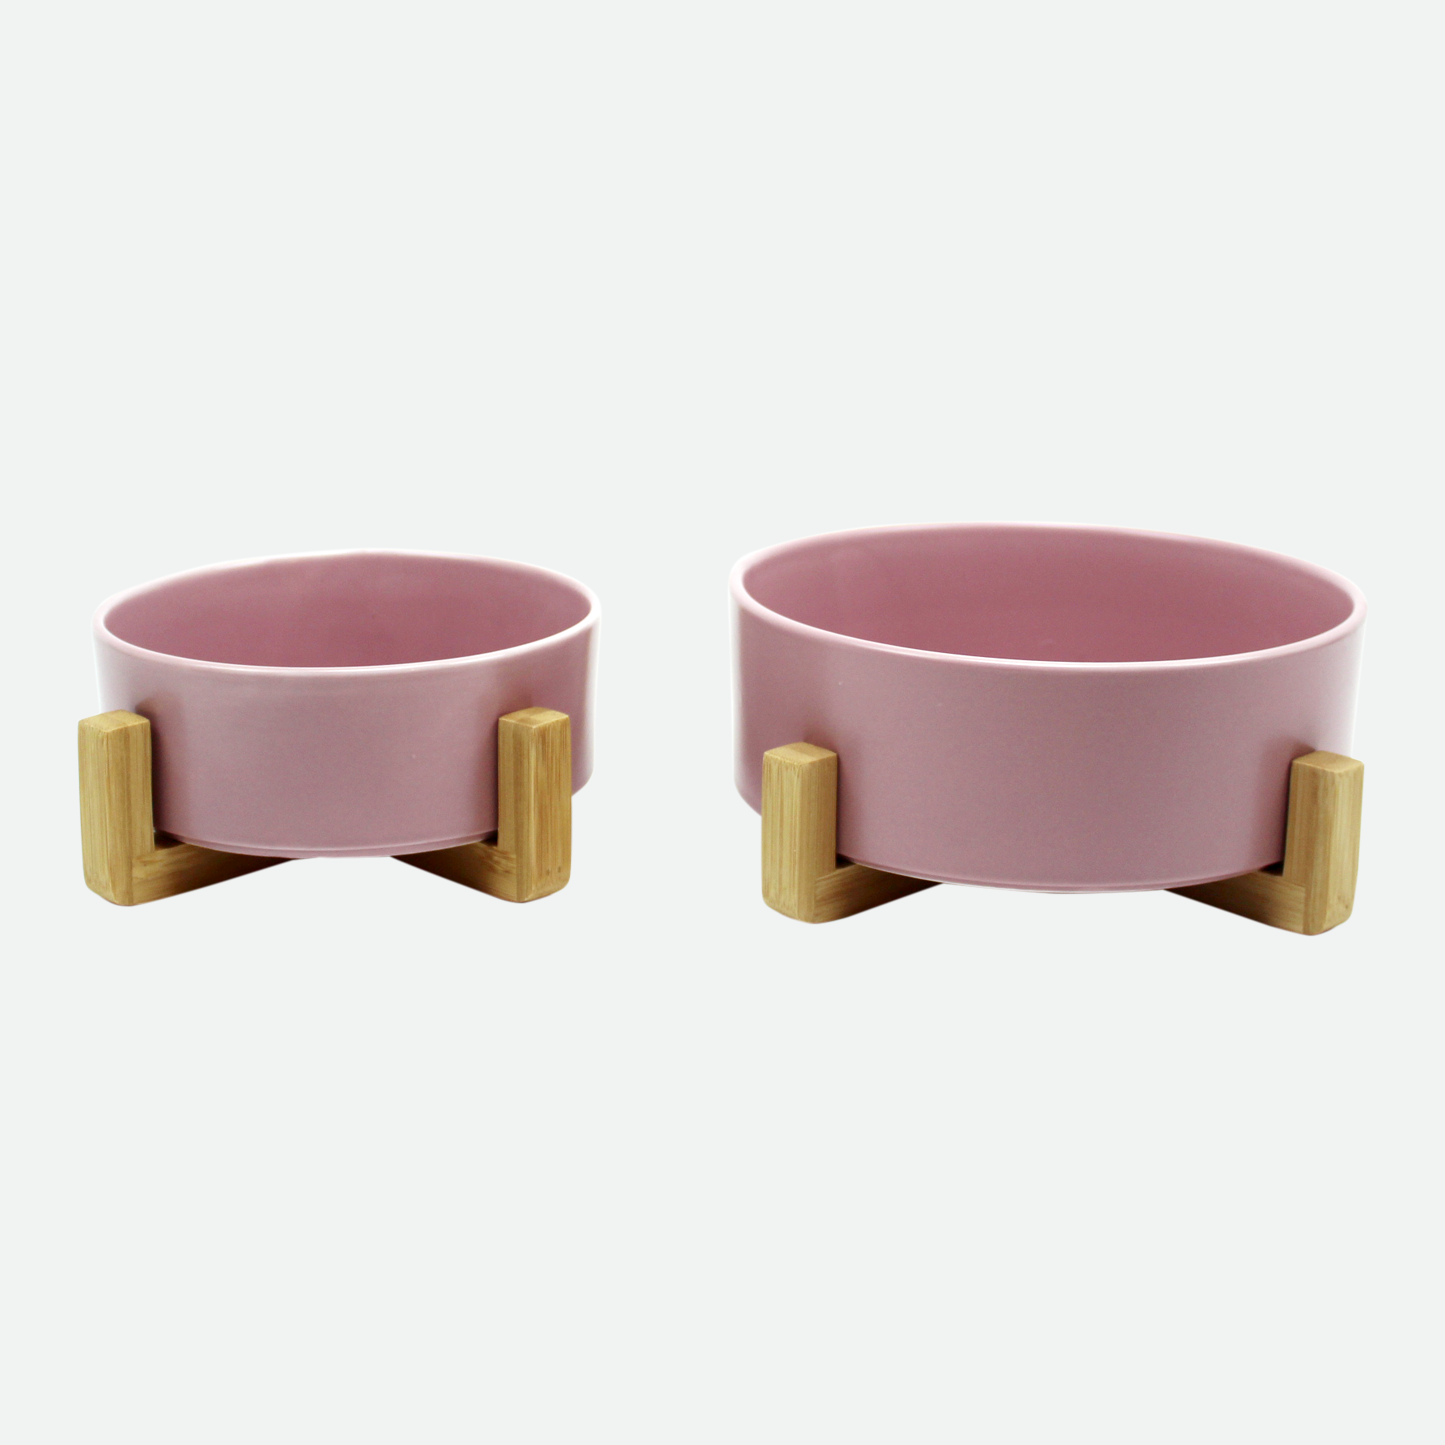 Ceramic bowl on wood pilotis for pet, pink